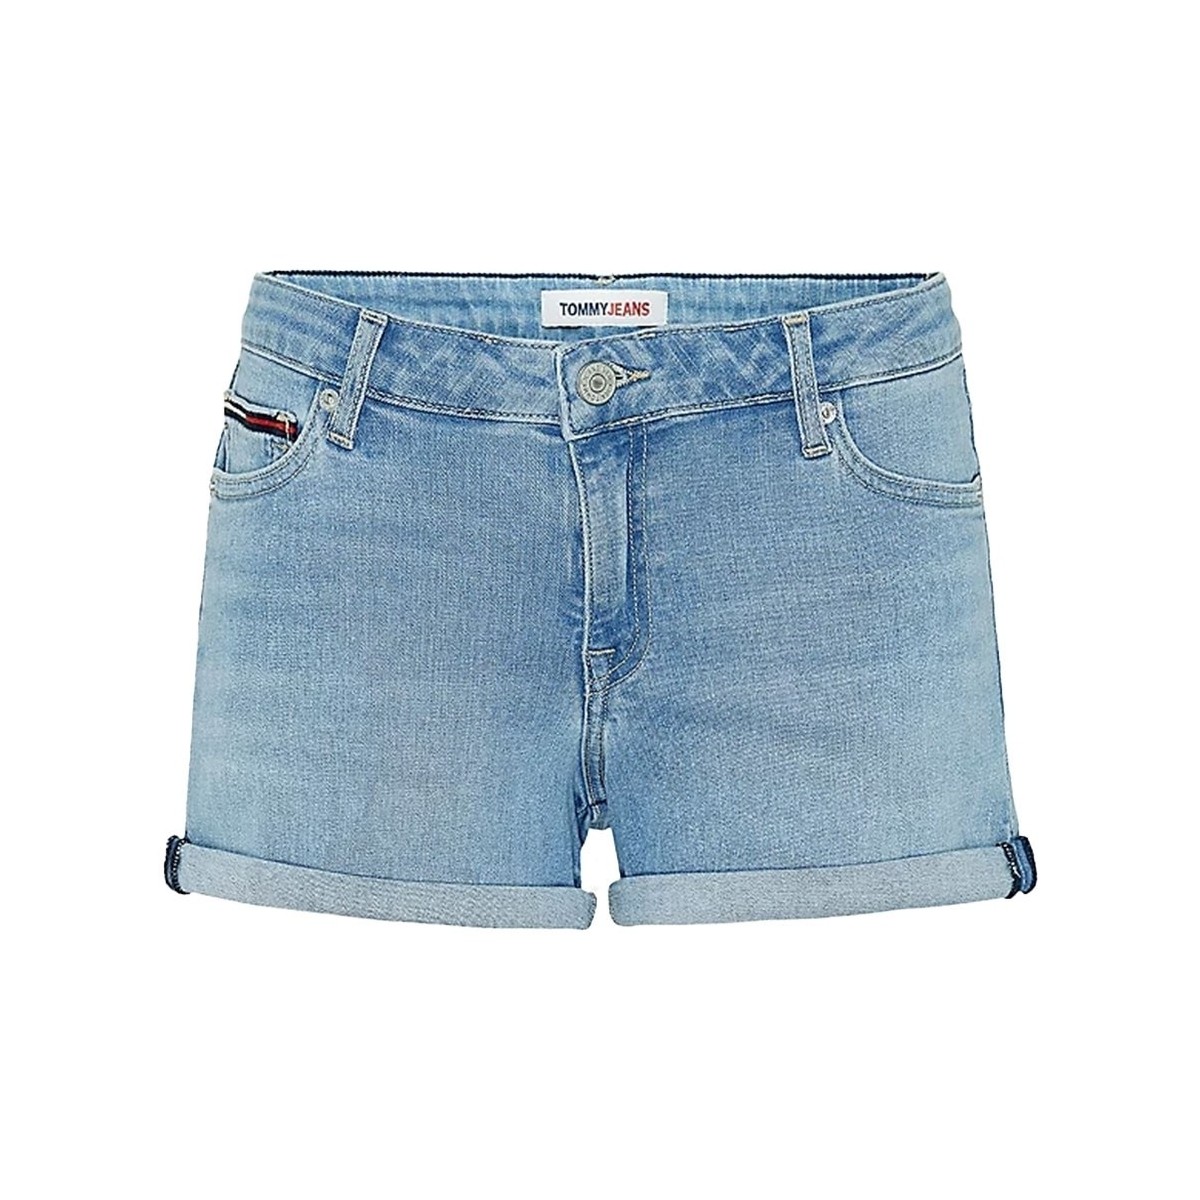 Vêtements Femme Shorts / Bermudas Tommy Jeans Short en jean  ref 52938 Denim extensible Bleu